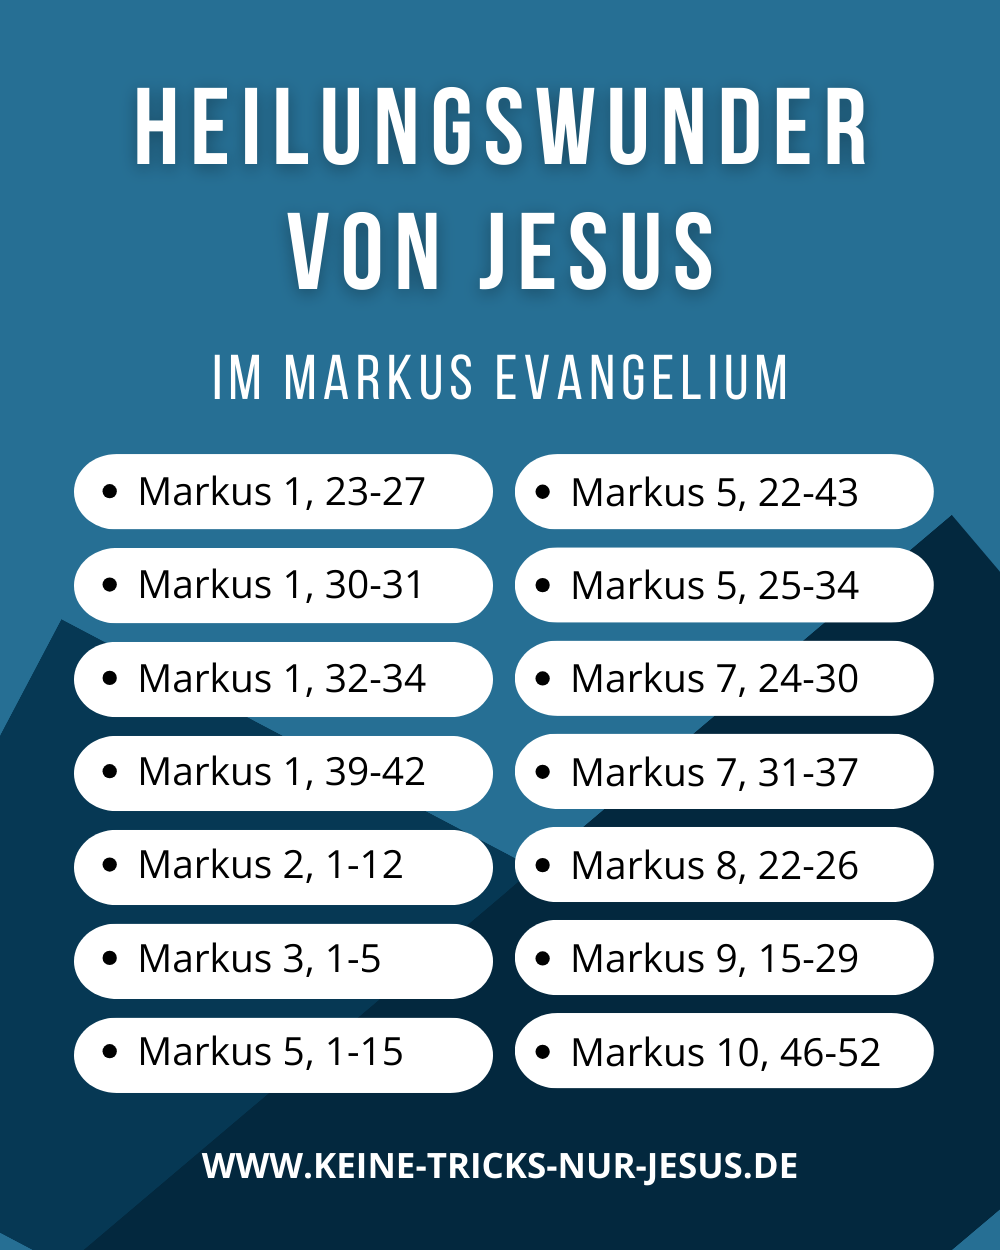 Markus Evangelium - Heilungswunder